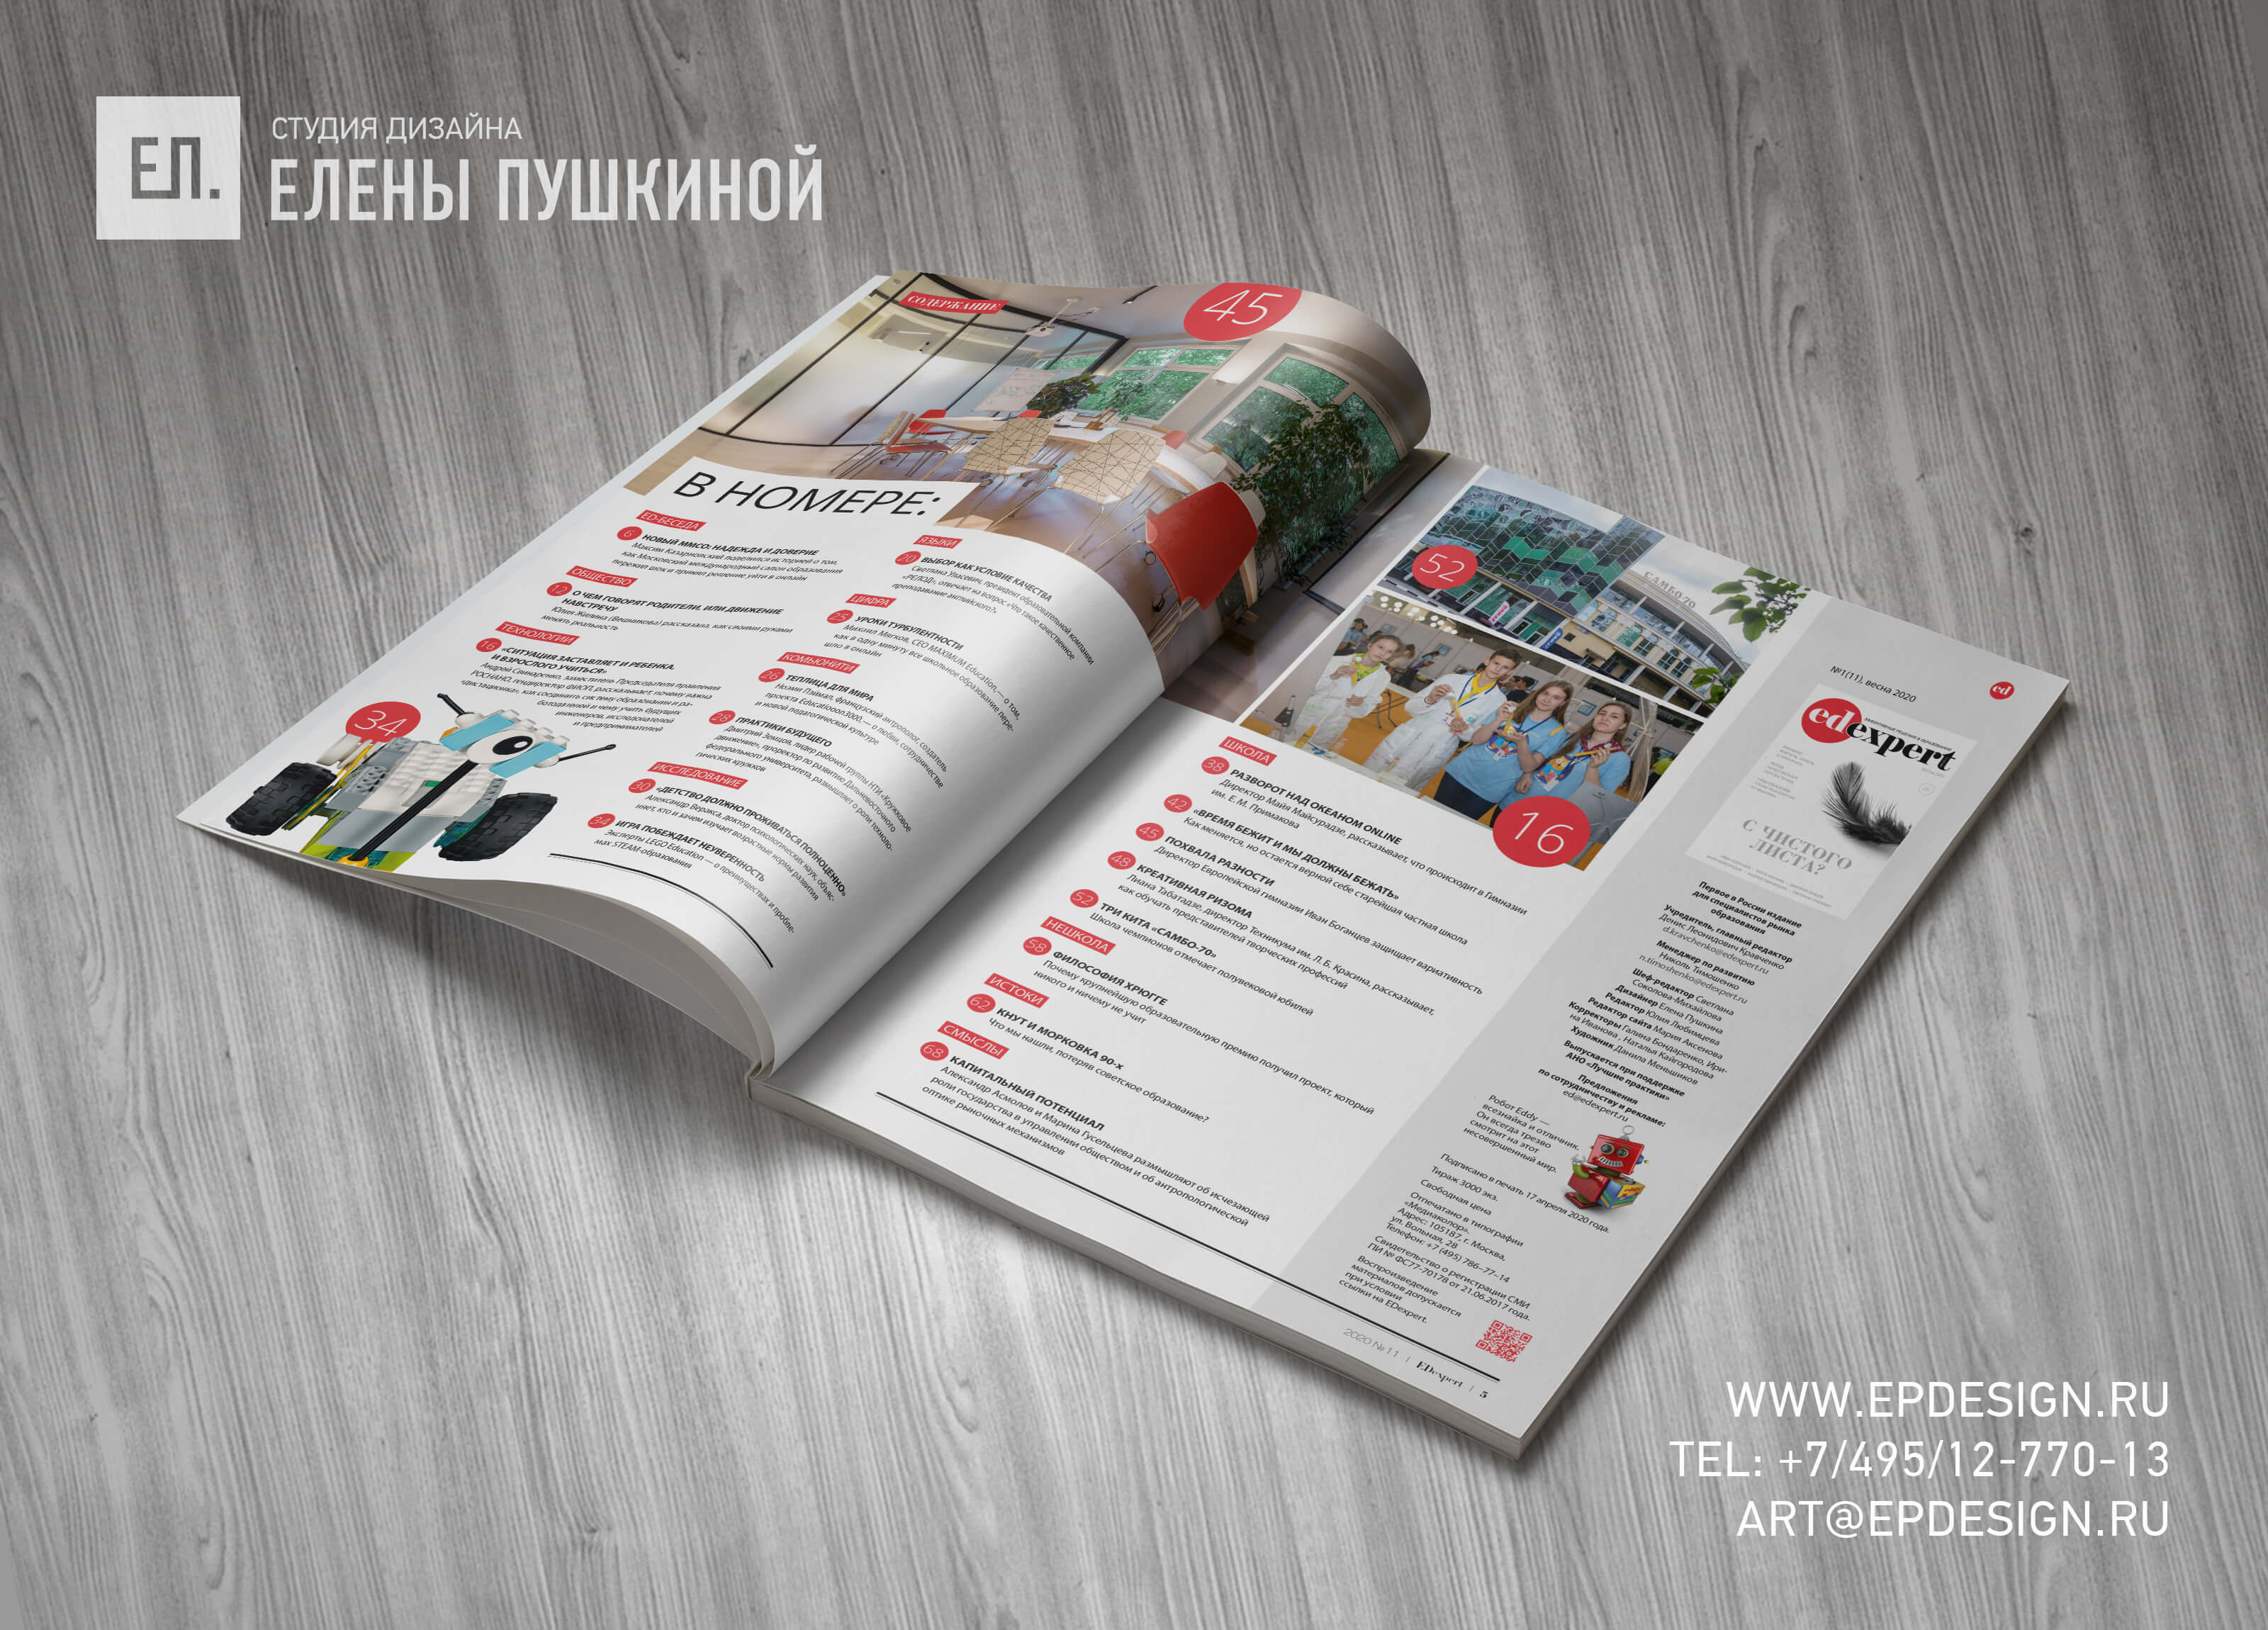 Журнал «EDexpert» №11 апрель 2020 — разработка с «нуля» логотипа, обложки, макета и вёрстка журнала Разработка журналов Портфолио